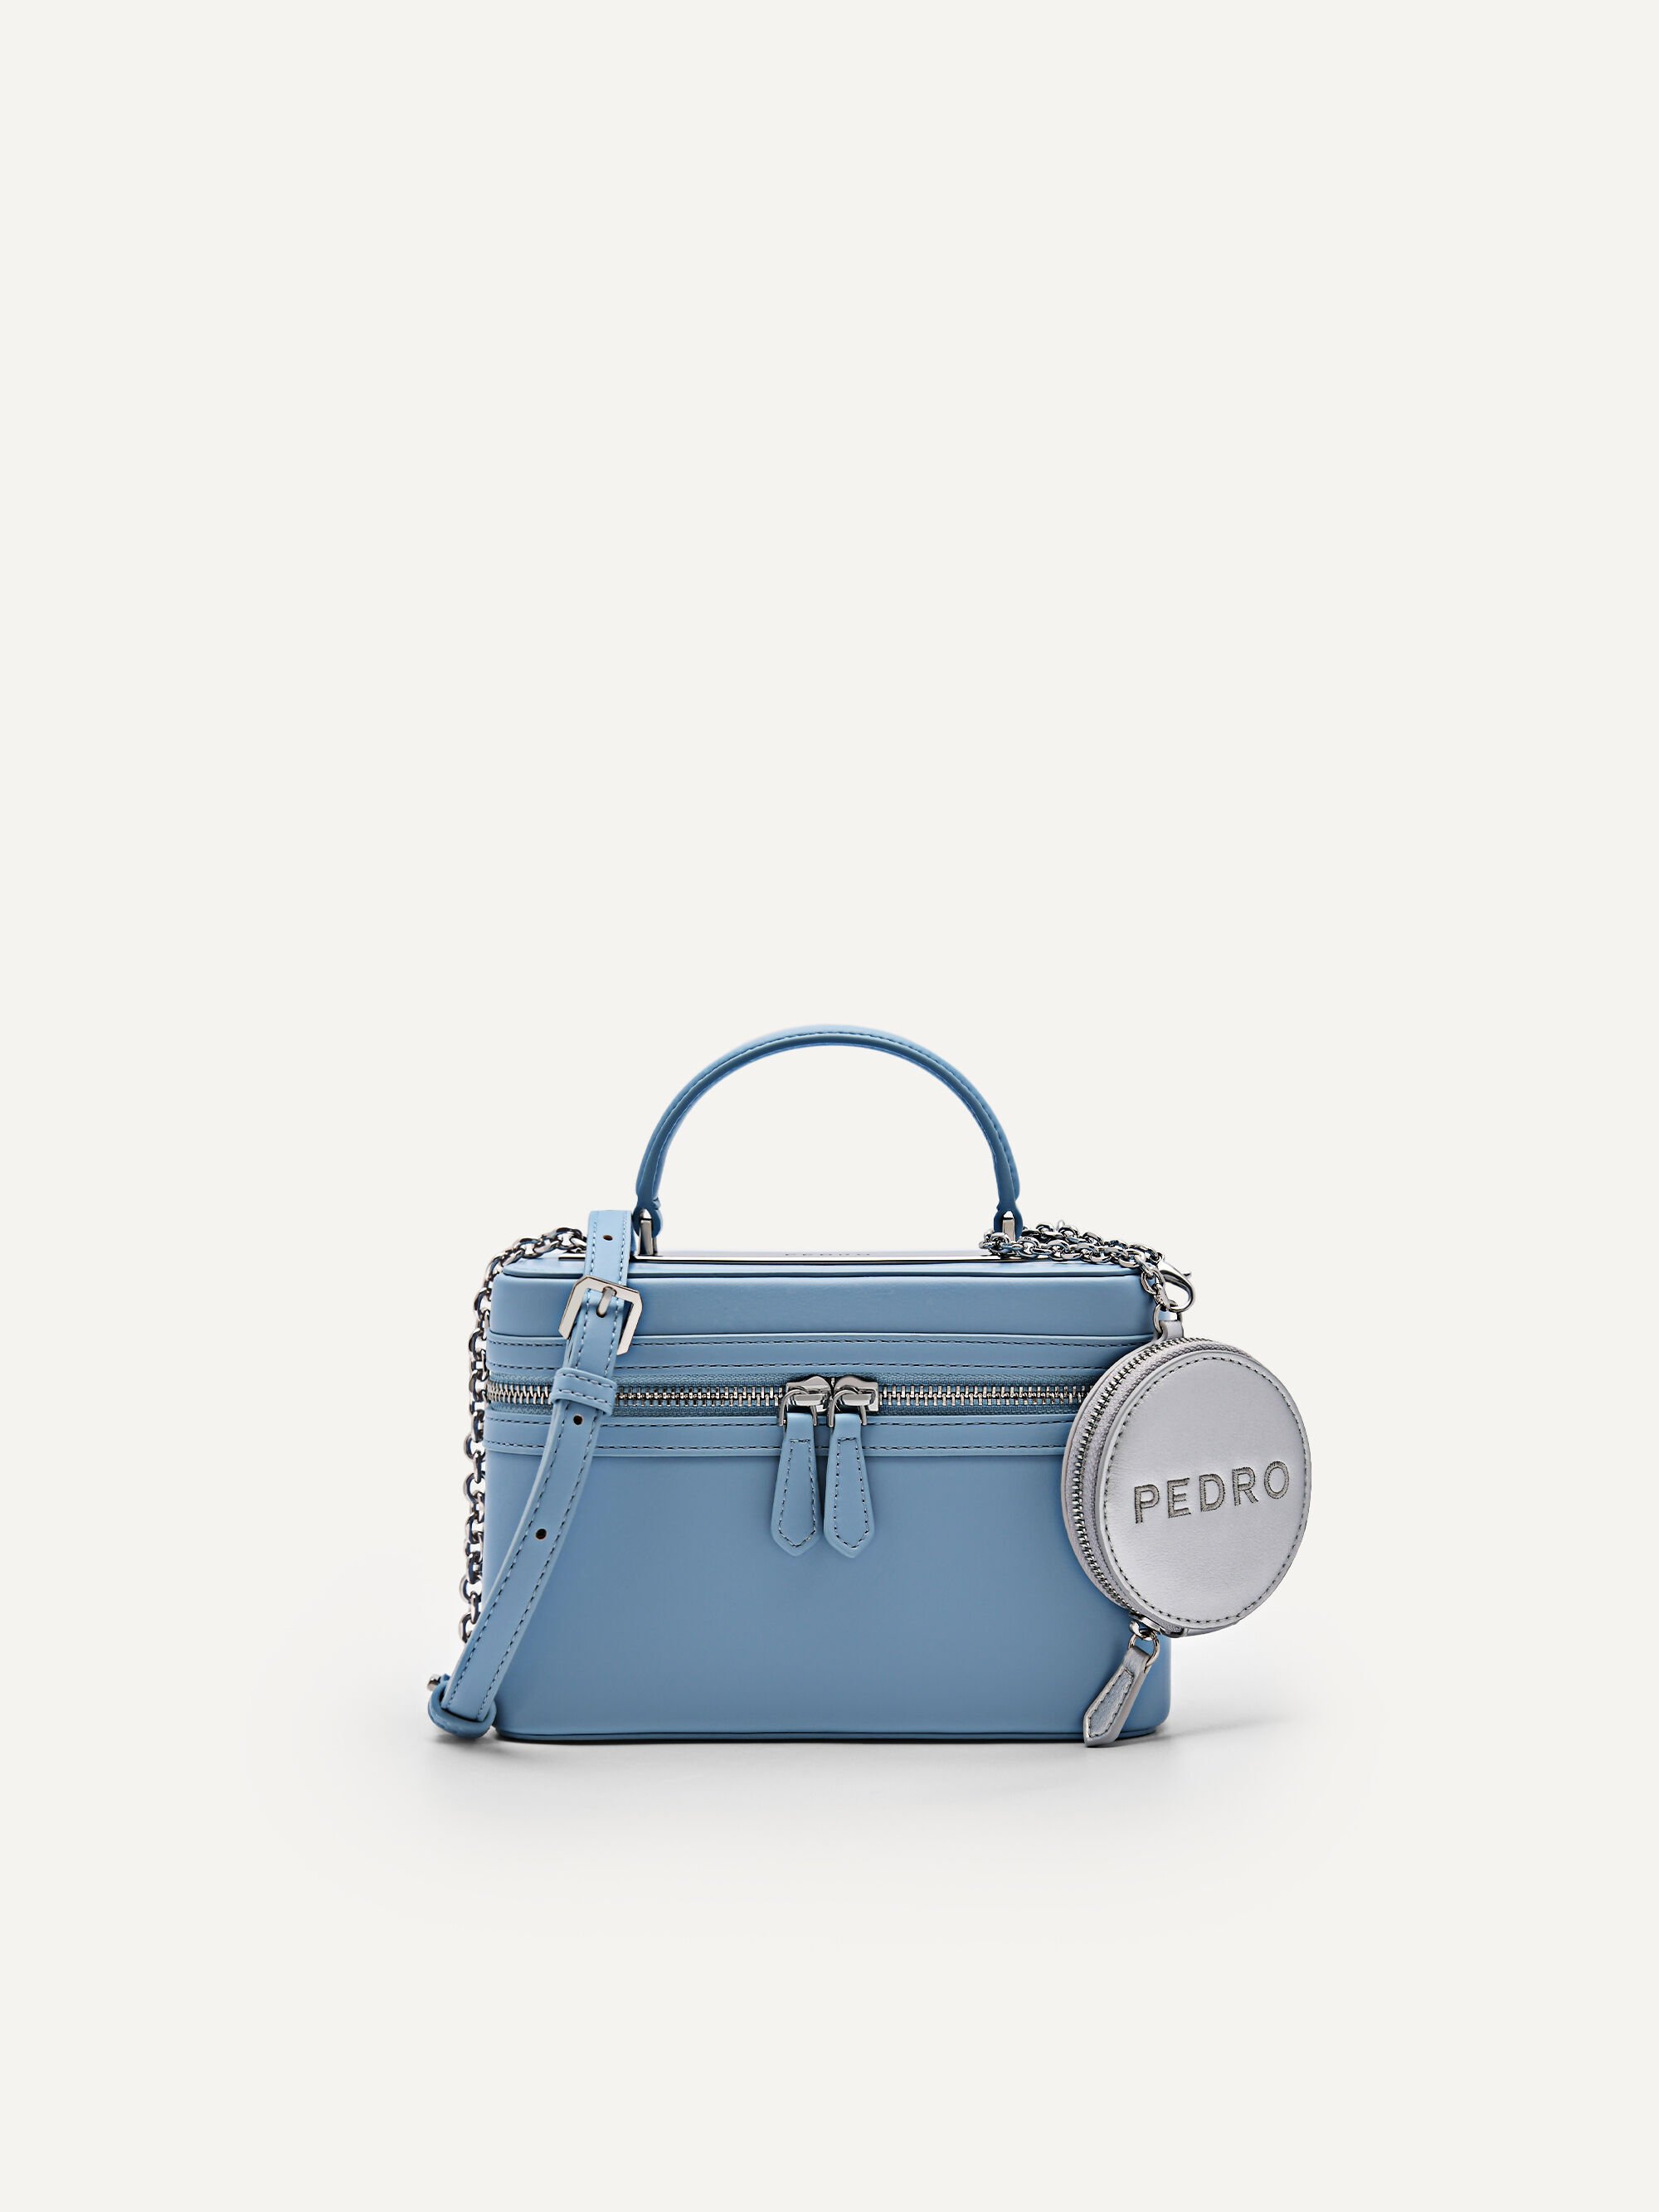 Hawaiian bag, purse, handbag - Light blue, orange floral f… | Flickr